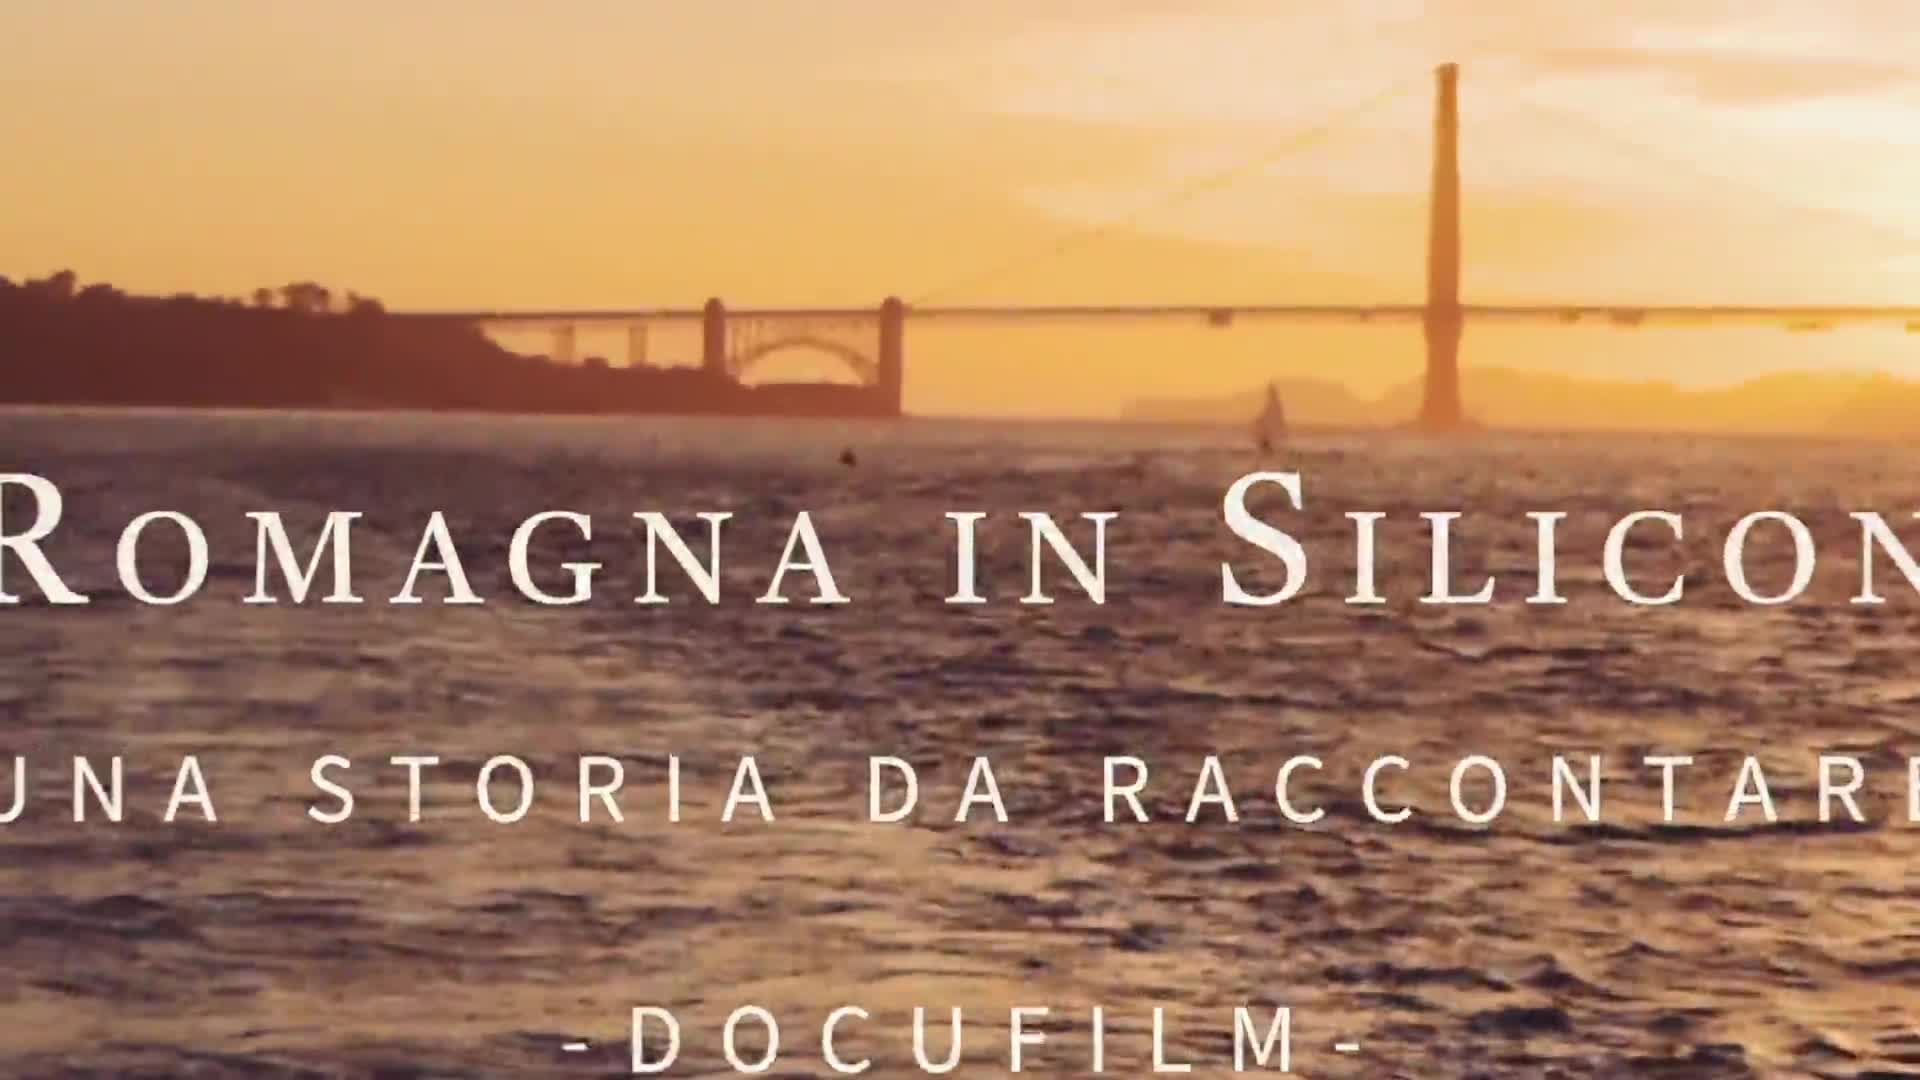 L'Emilia-Romagna in Silicon Valley: una storia da raccontare - Trailer - immagine di copertina